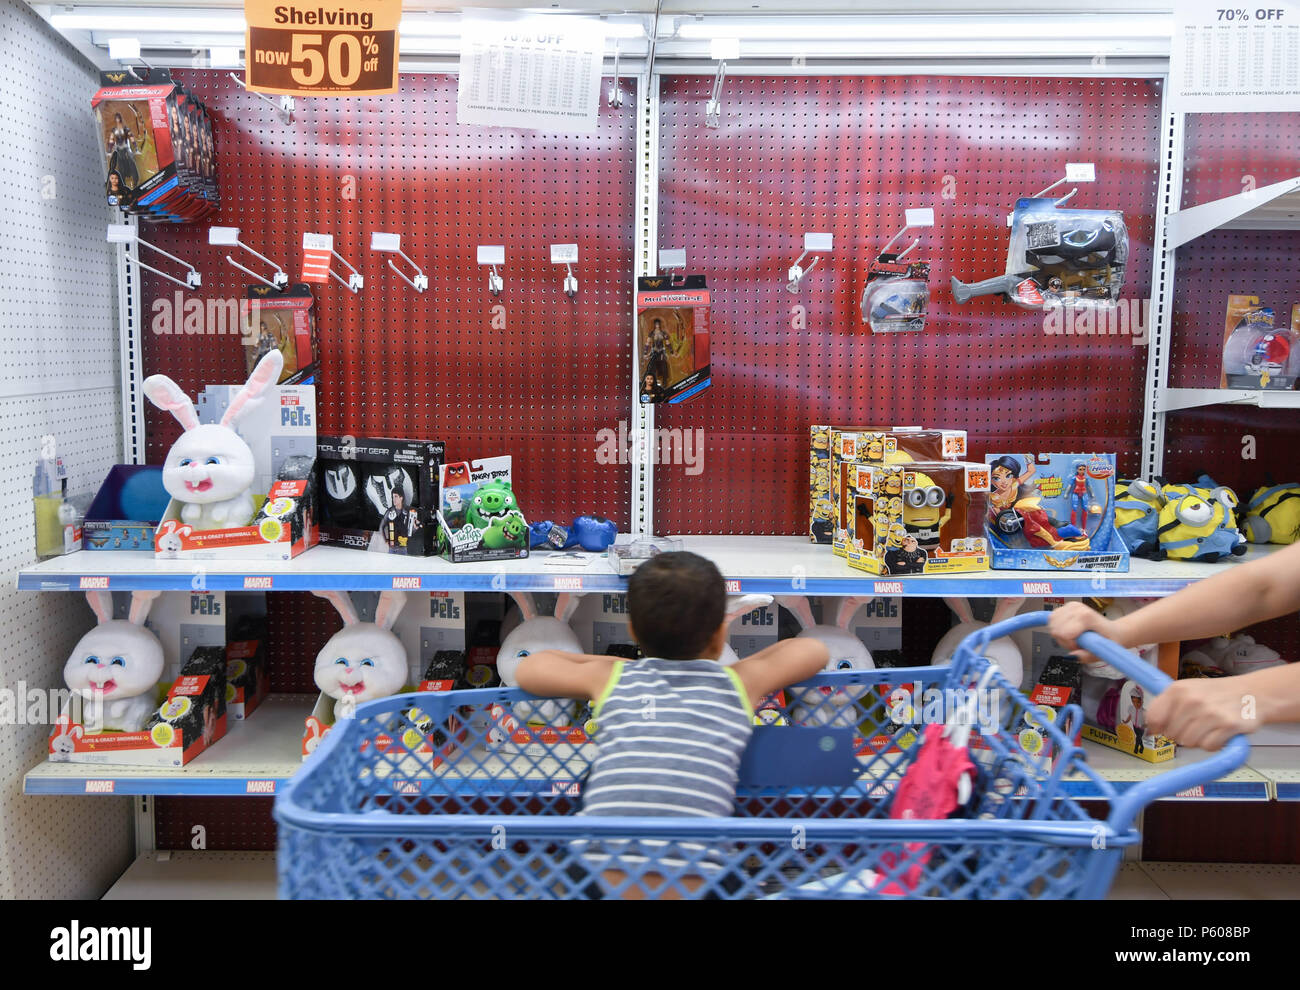 Un garçon regarde les animaux en peluche dans un magasin Toys R Us jours avant sa fermeture programmée. Banque D'Images